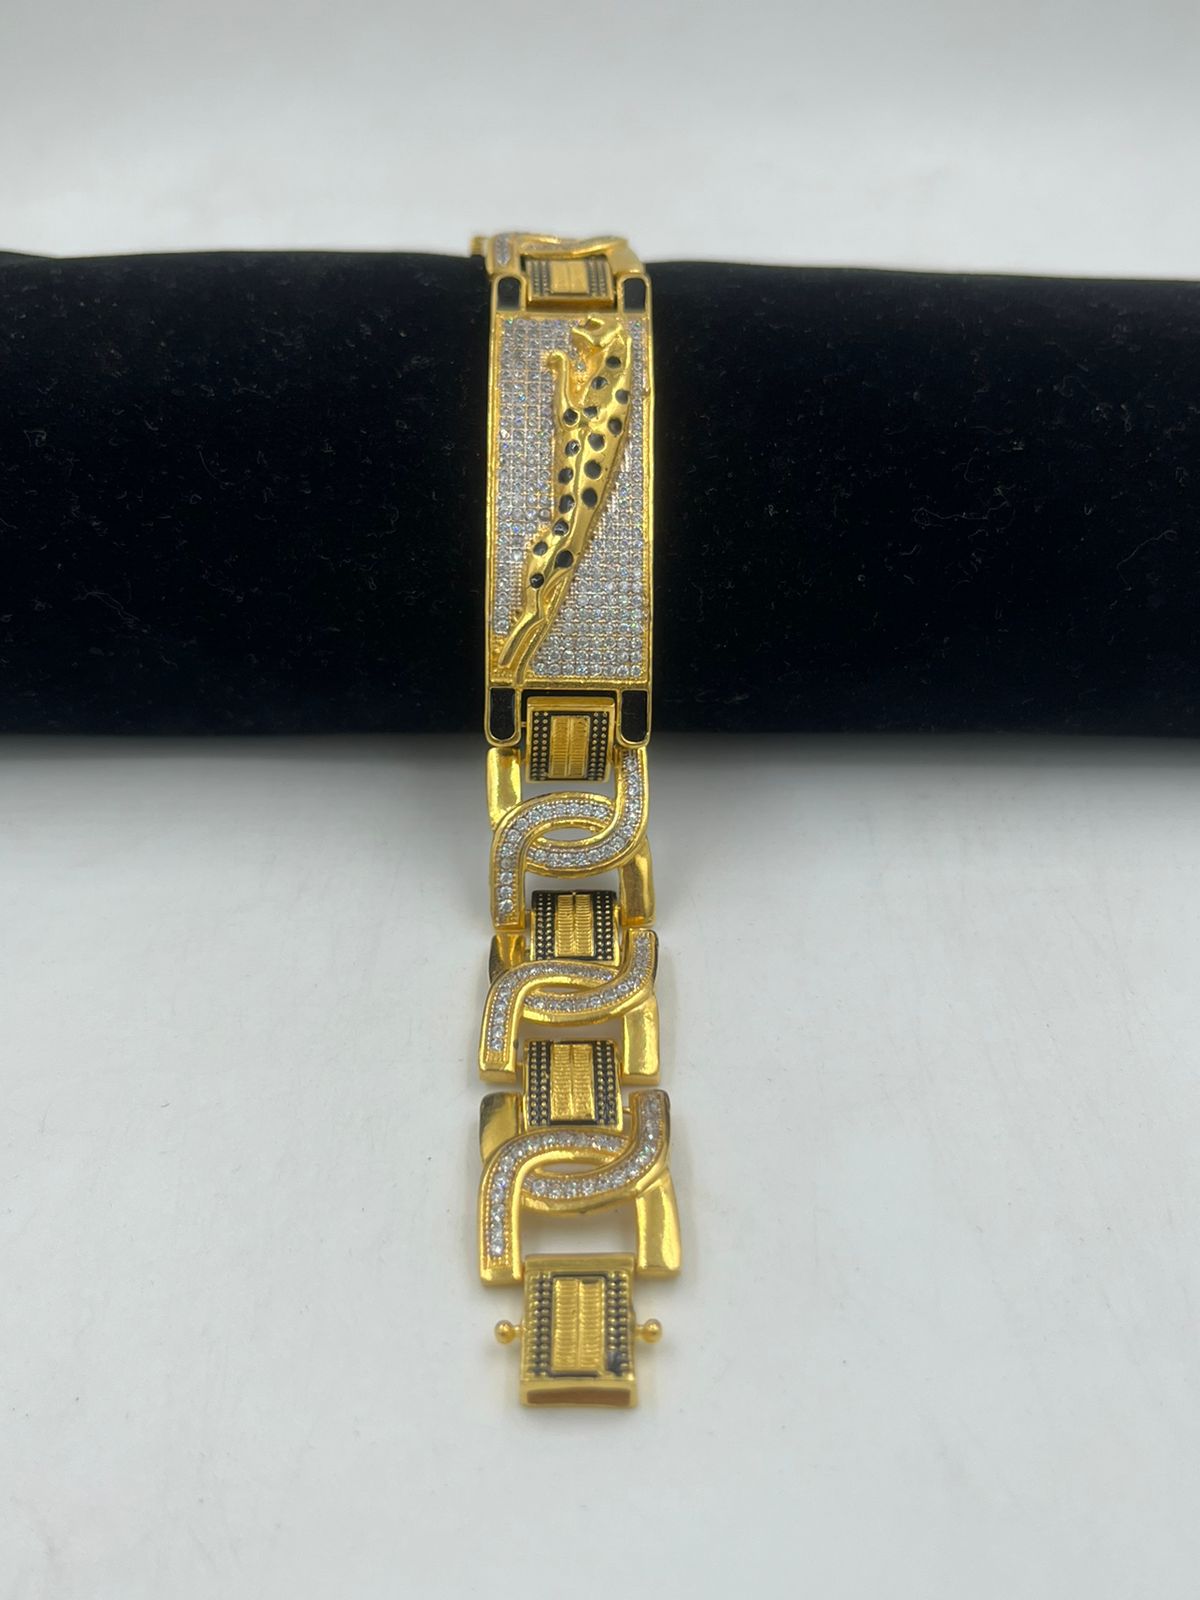 Bracelet yellow gold 585/000, length: approx. 20 cm, wid… | Drouot.com